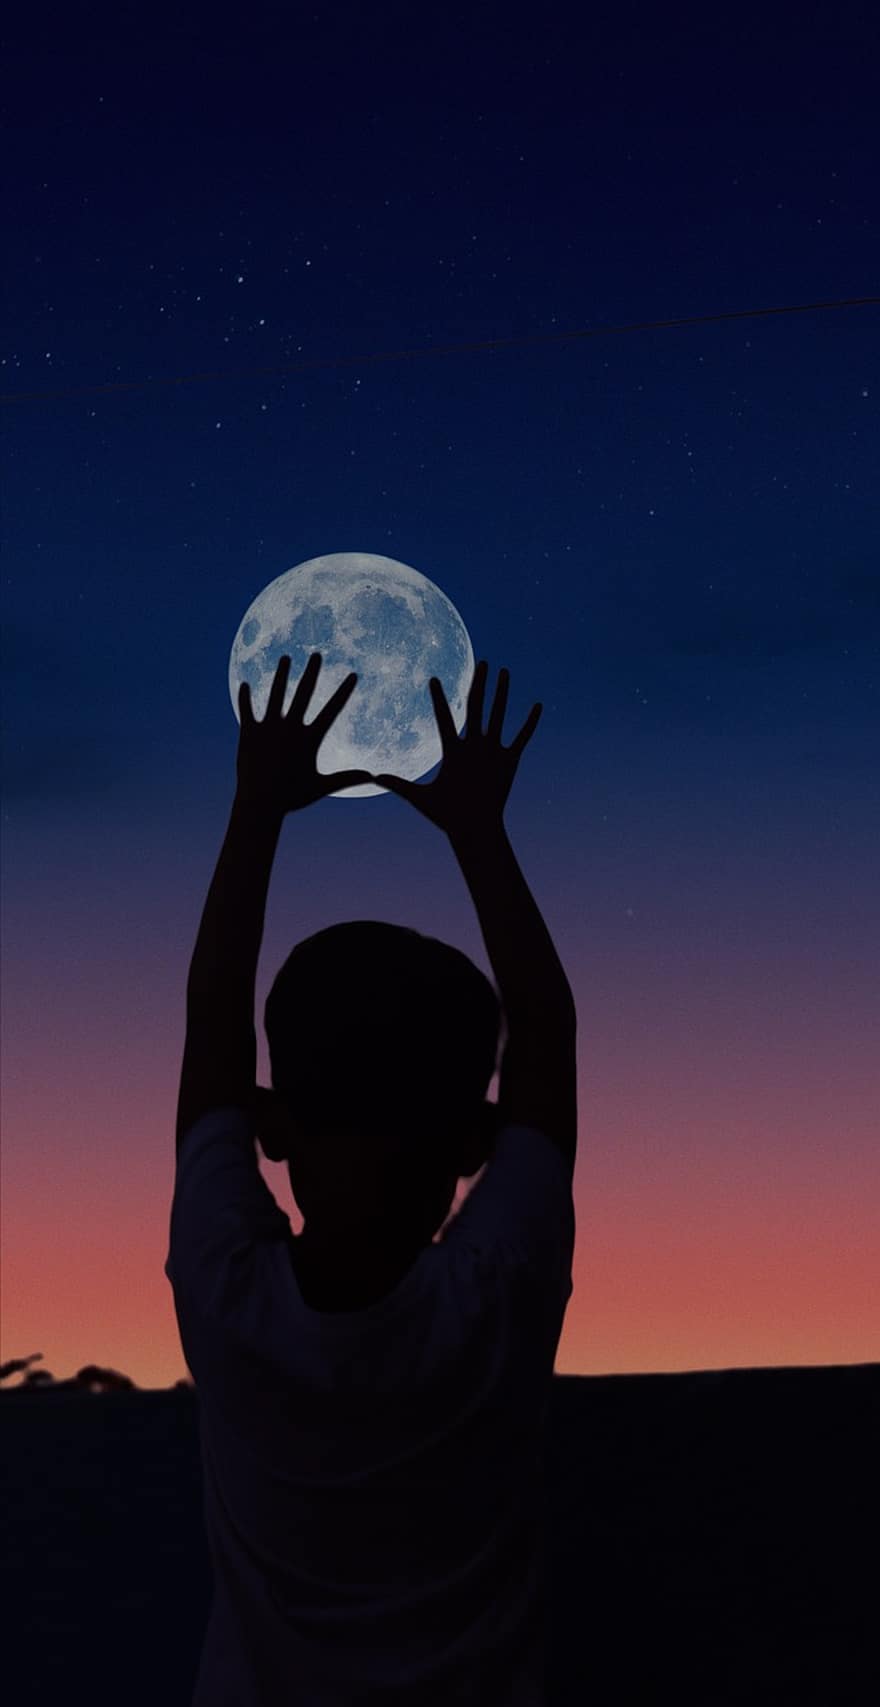 księżyc, dziecko, noc, ręce, dom, sylwetka, pełnia księżyca, Łapanie Księżyca, światło księżyca